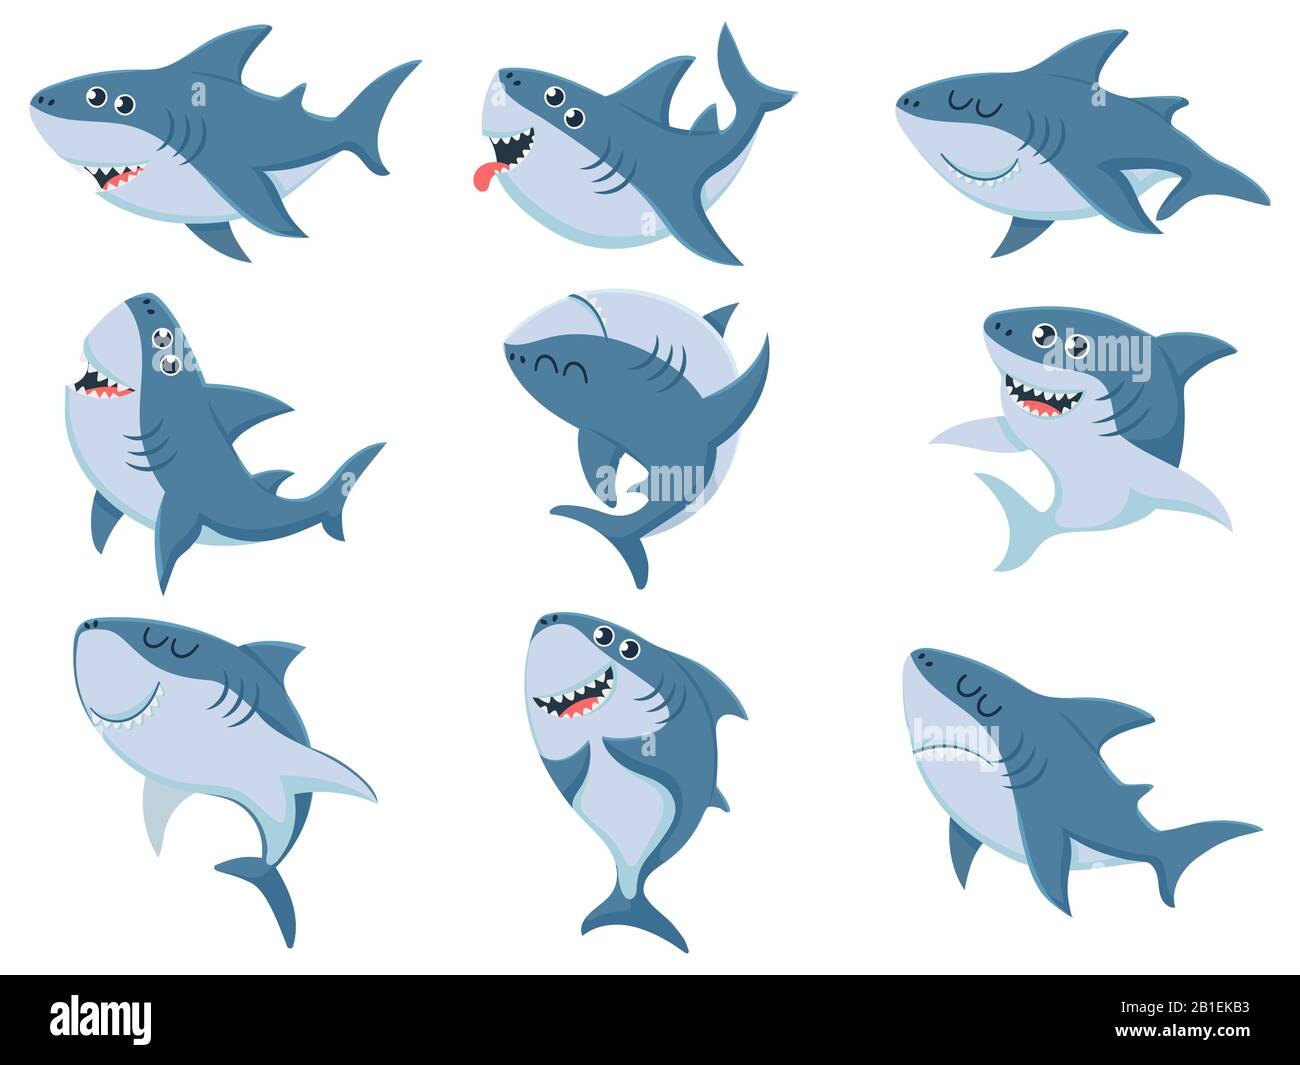 Zeichentrickhaie. Comic-Hai-Tiere, gruselige Kiefer und Ozeanschwimmen wütende Haie Vektorgrafiken Stock Vektor